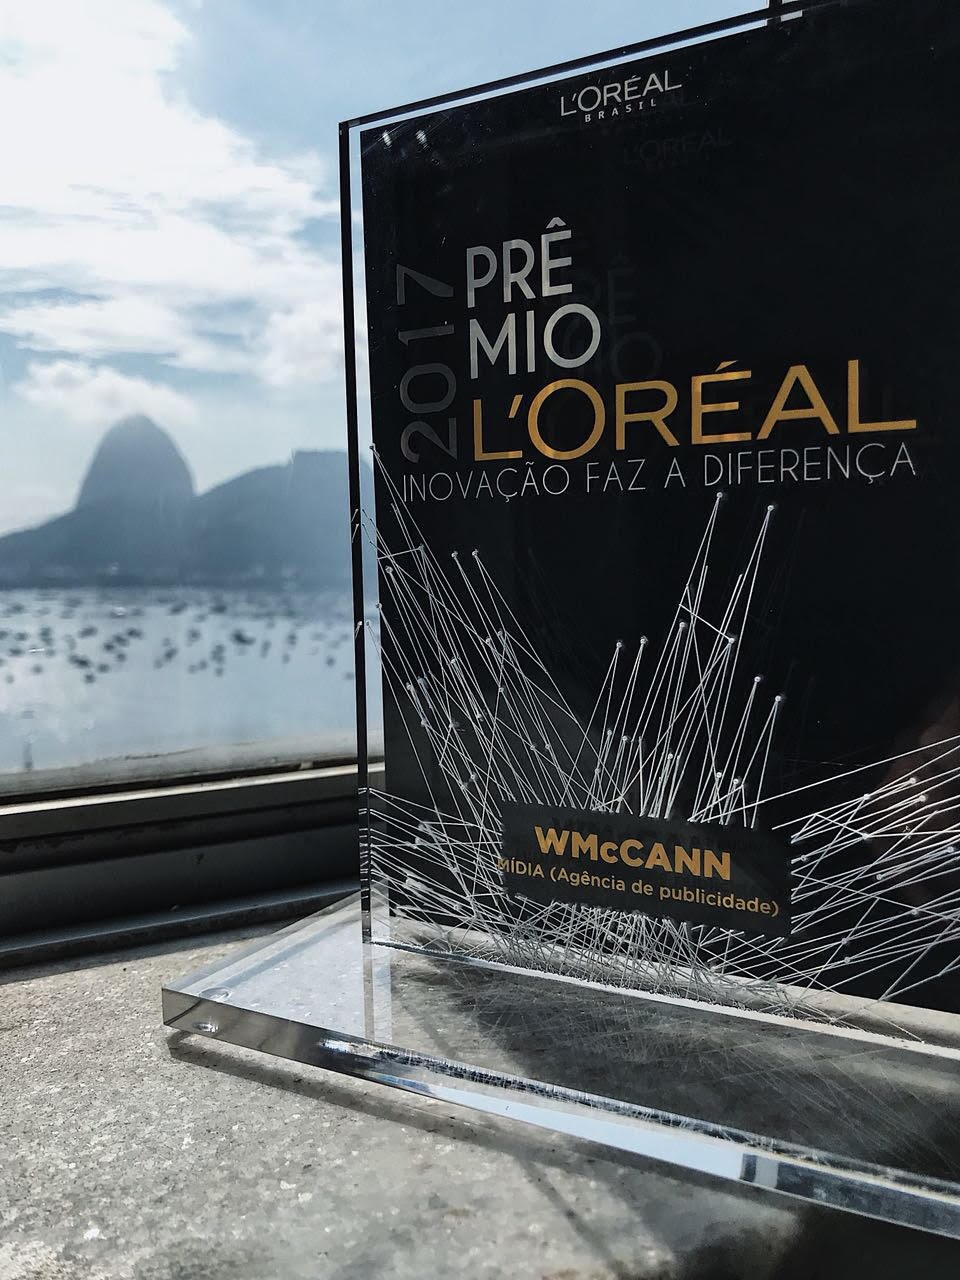 Na imagem está o prêmio recebido pela WMcCann. No objeto há o texto: Prêmio 2017 L'Oréal. Inovação faz a diferença.